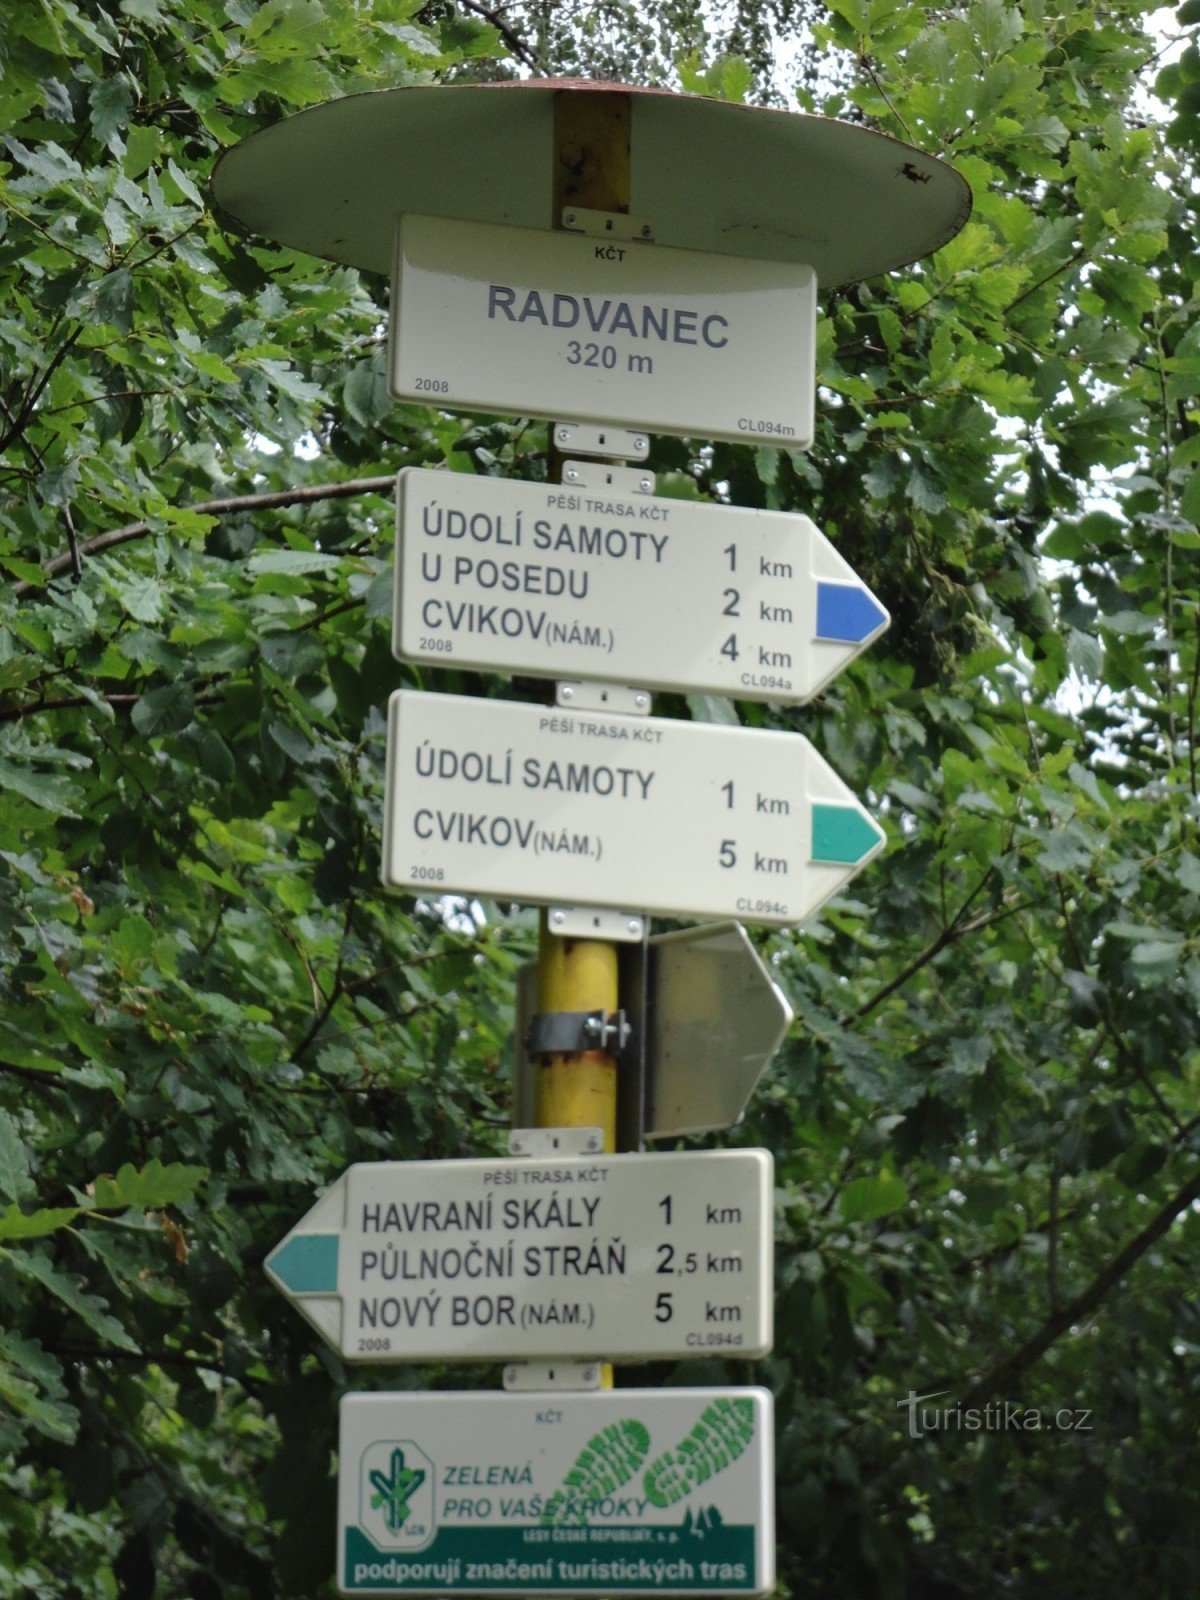 τουριστικό σταυροδρόμι Radvanec